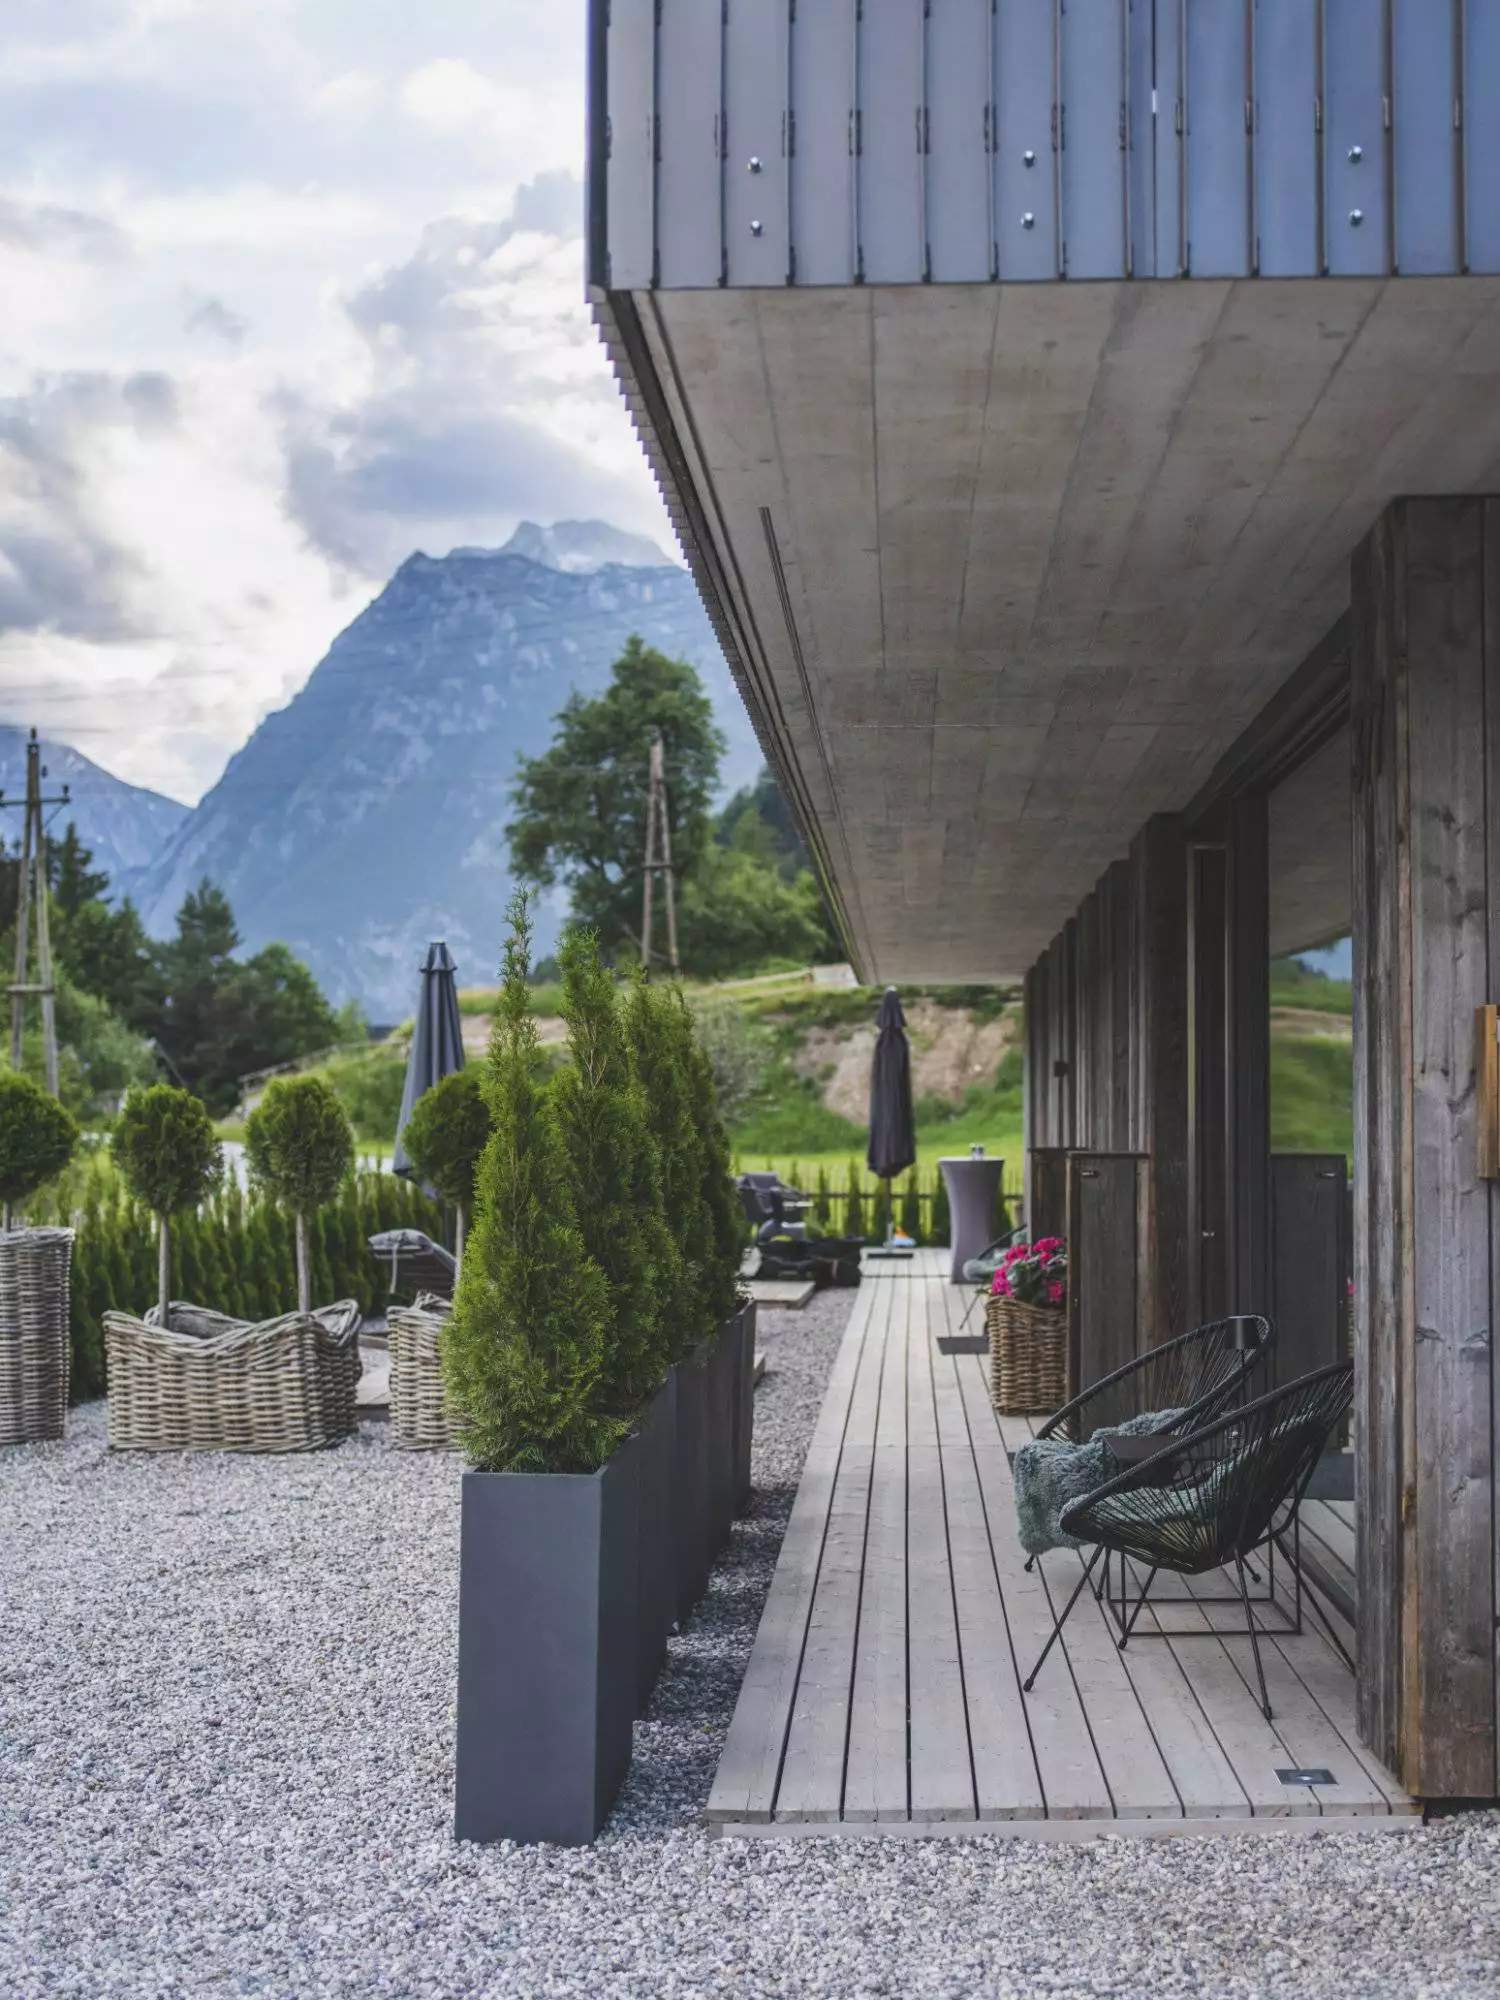 Ferienwohnung Tennengau - Die Terrasse der Ferienwohnung mit Blick auf die umliegenden Berge